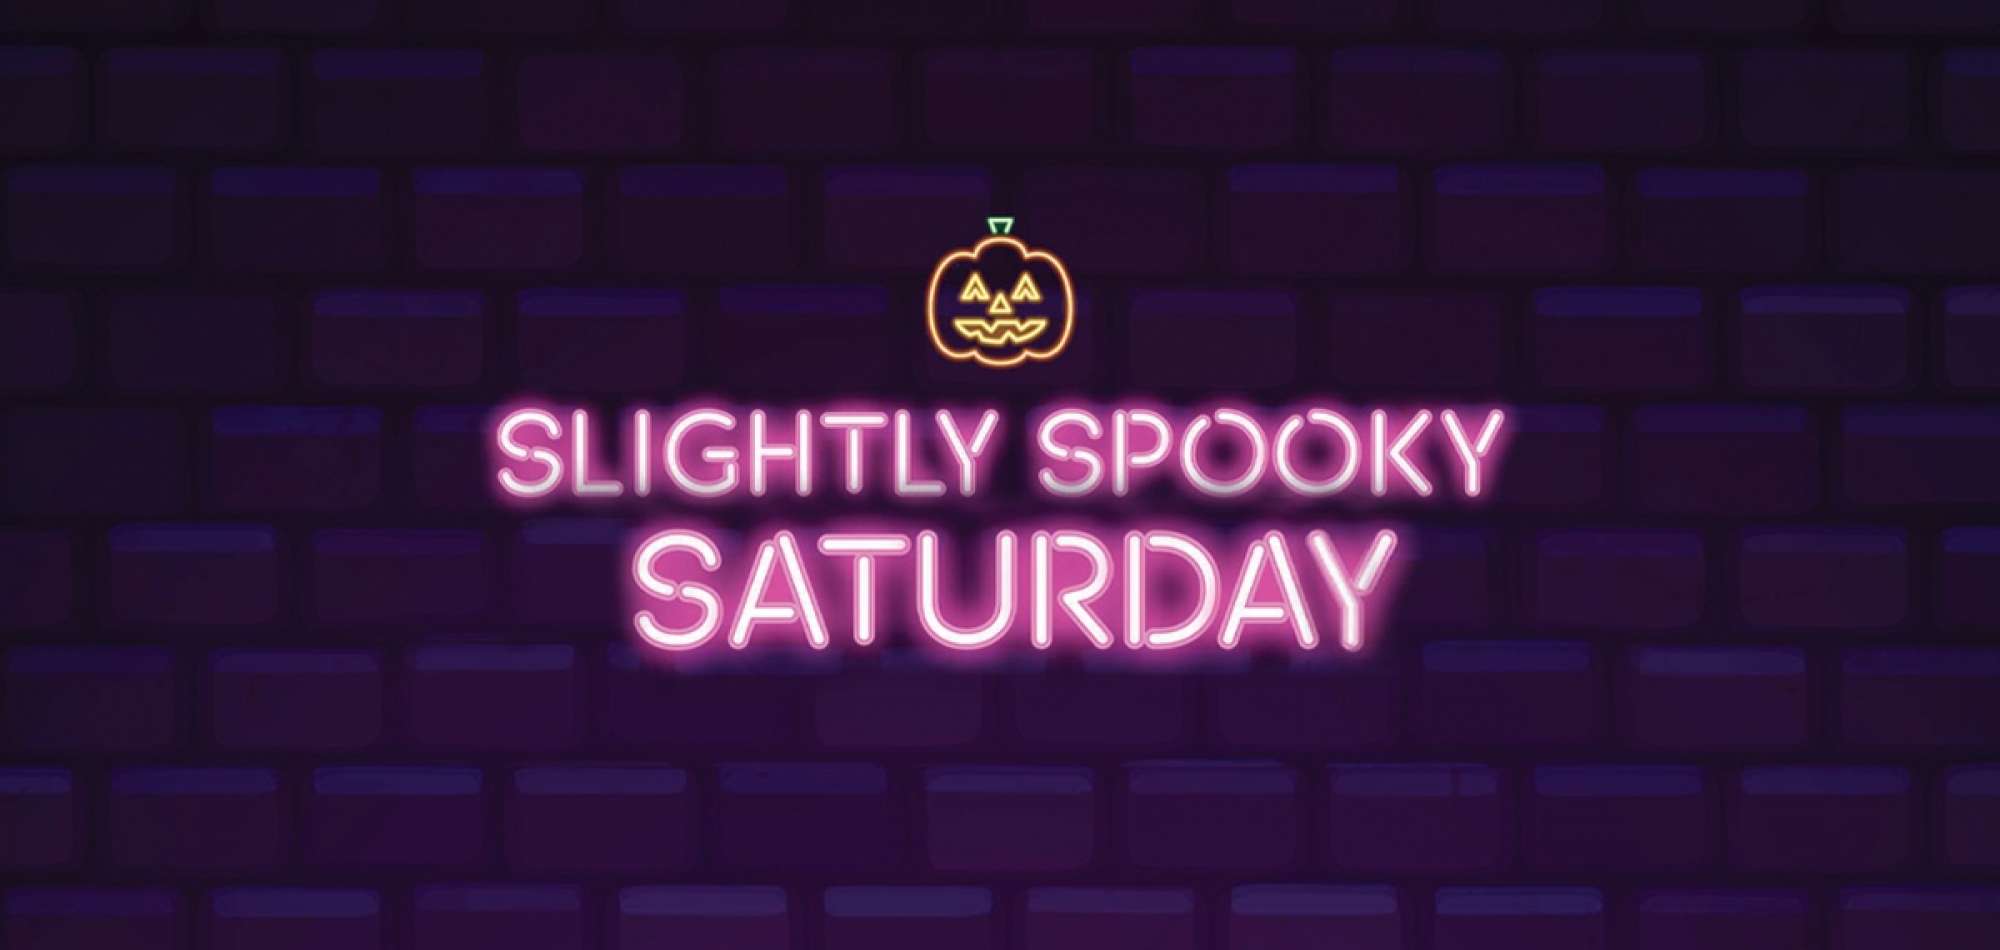 Slightly Spooky Saturday